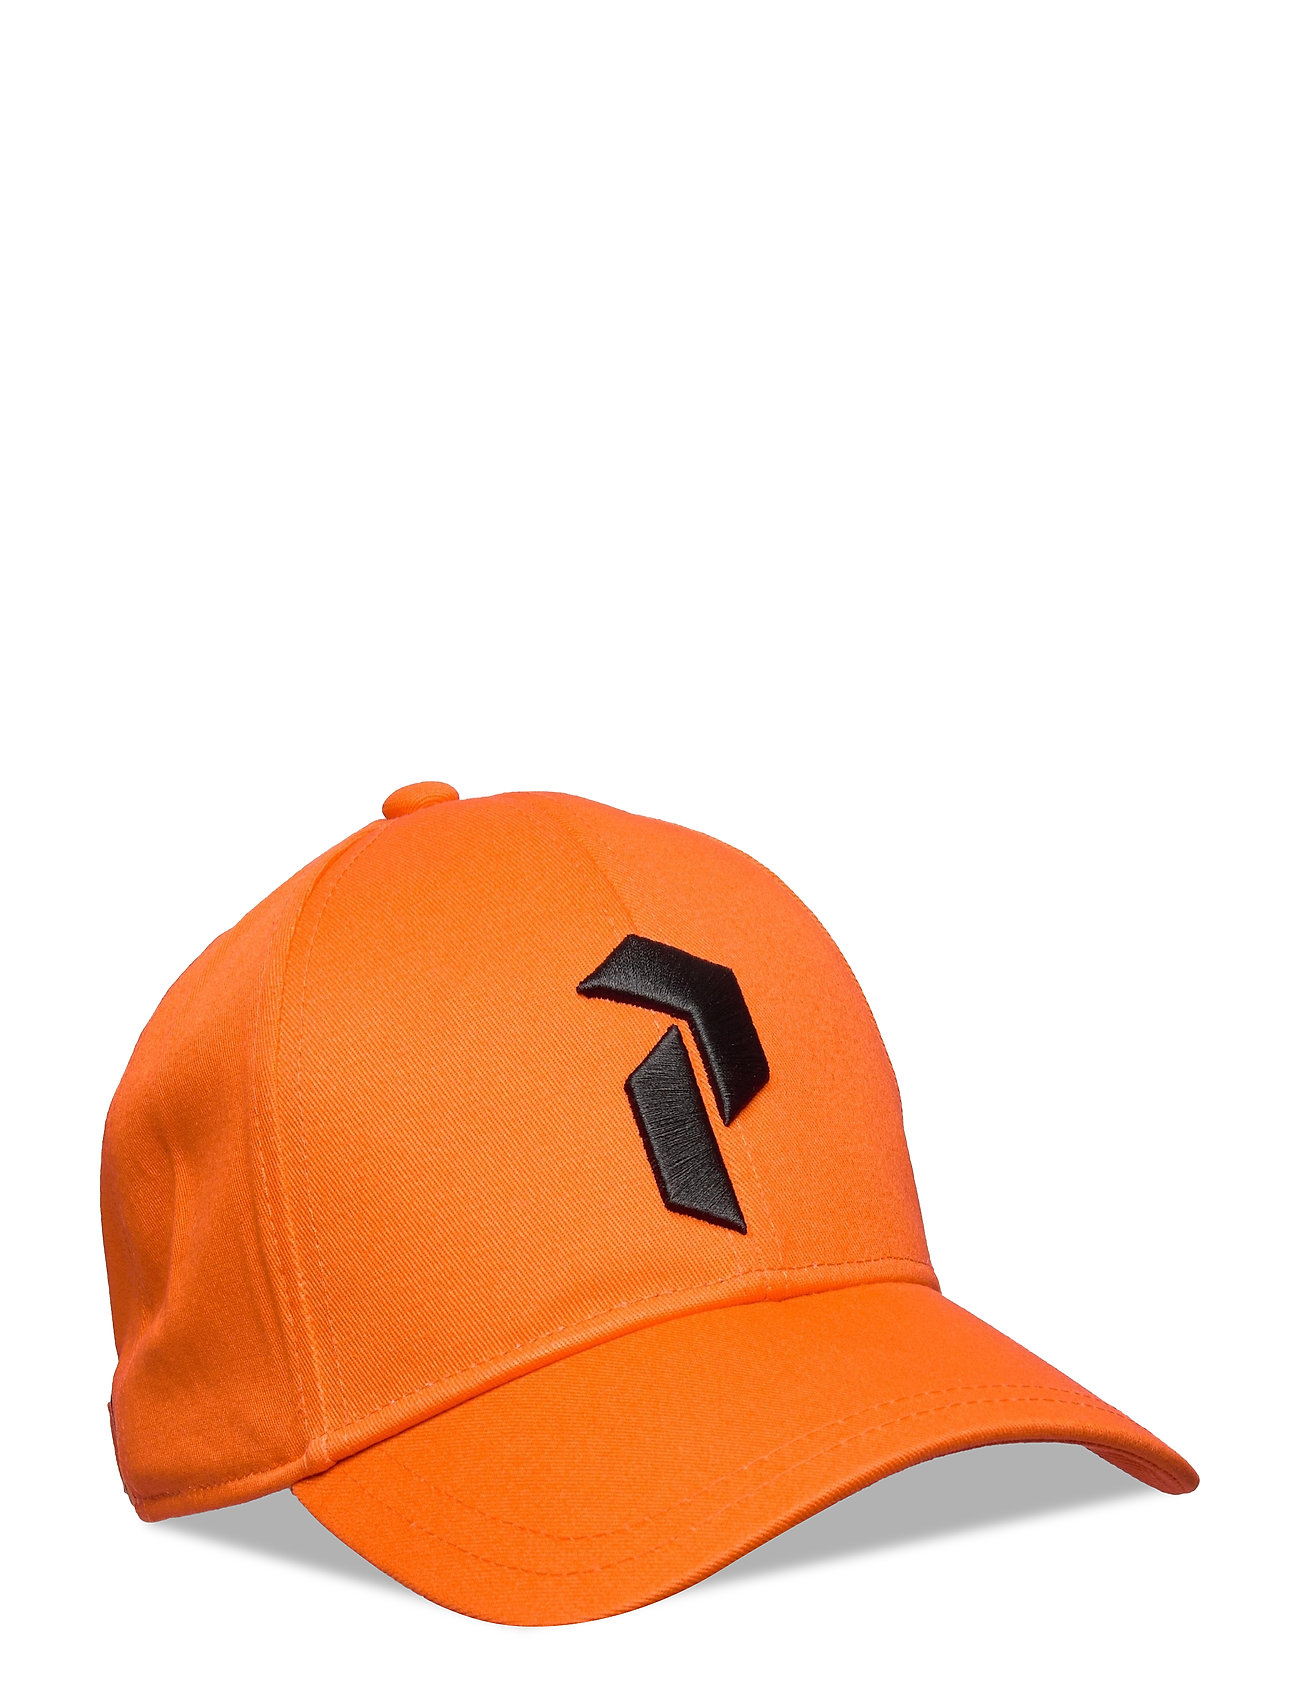 Jr Retro Cap Accessories Headwear Caps Orange Peak Performance